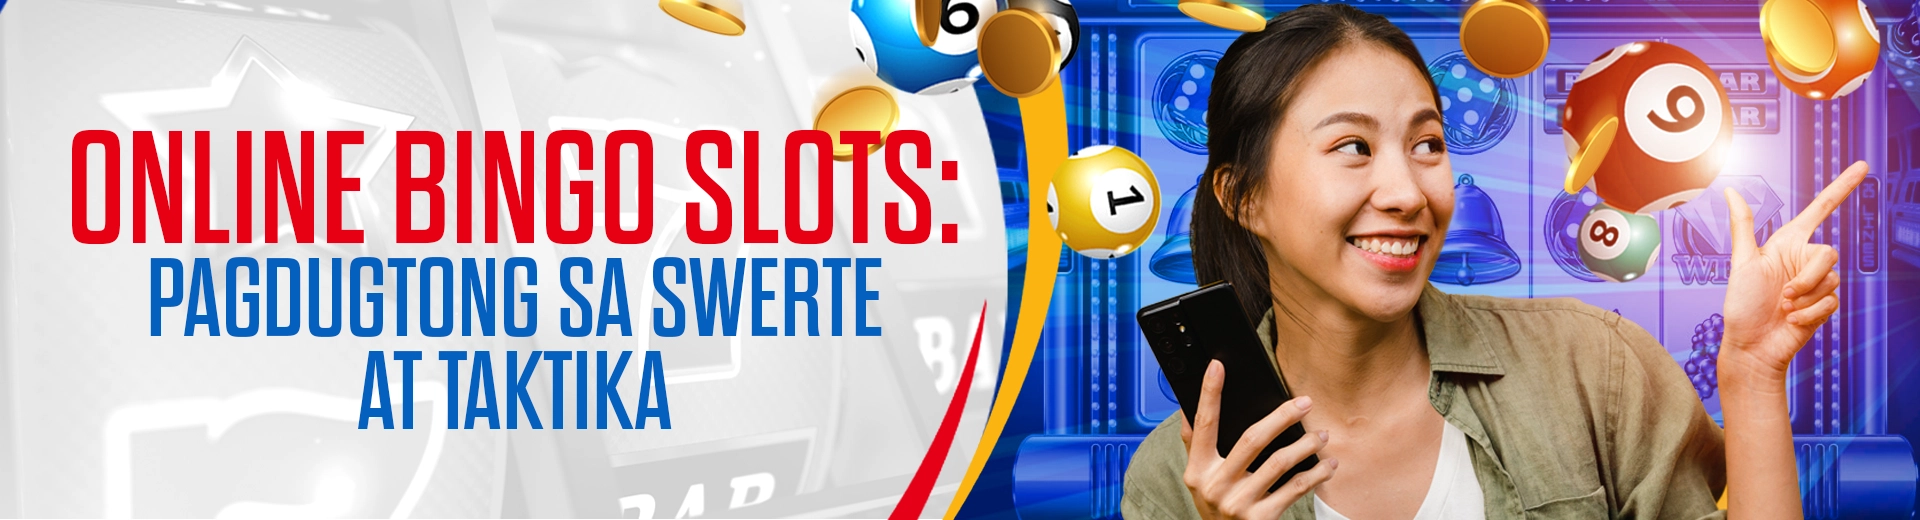 OKBet Online Bingo Slots